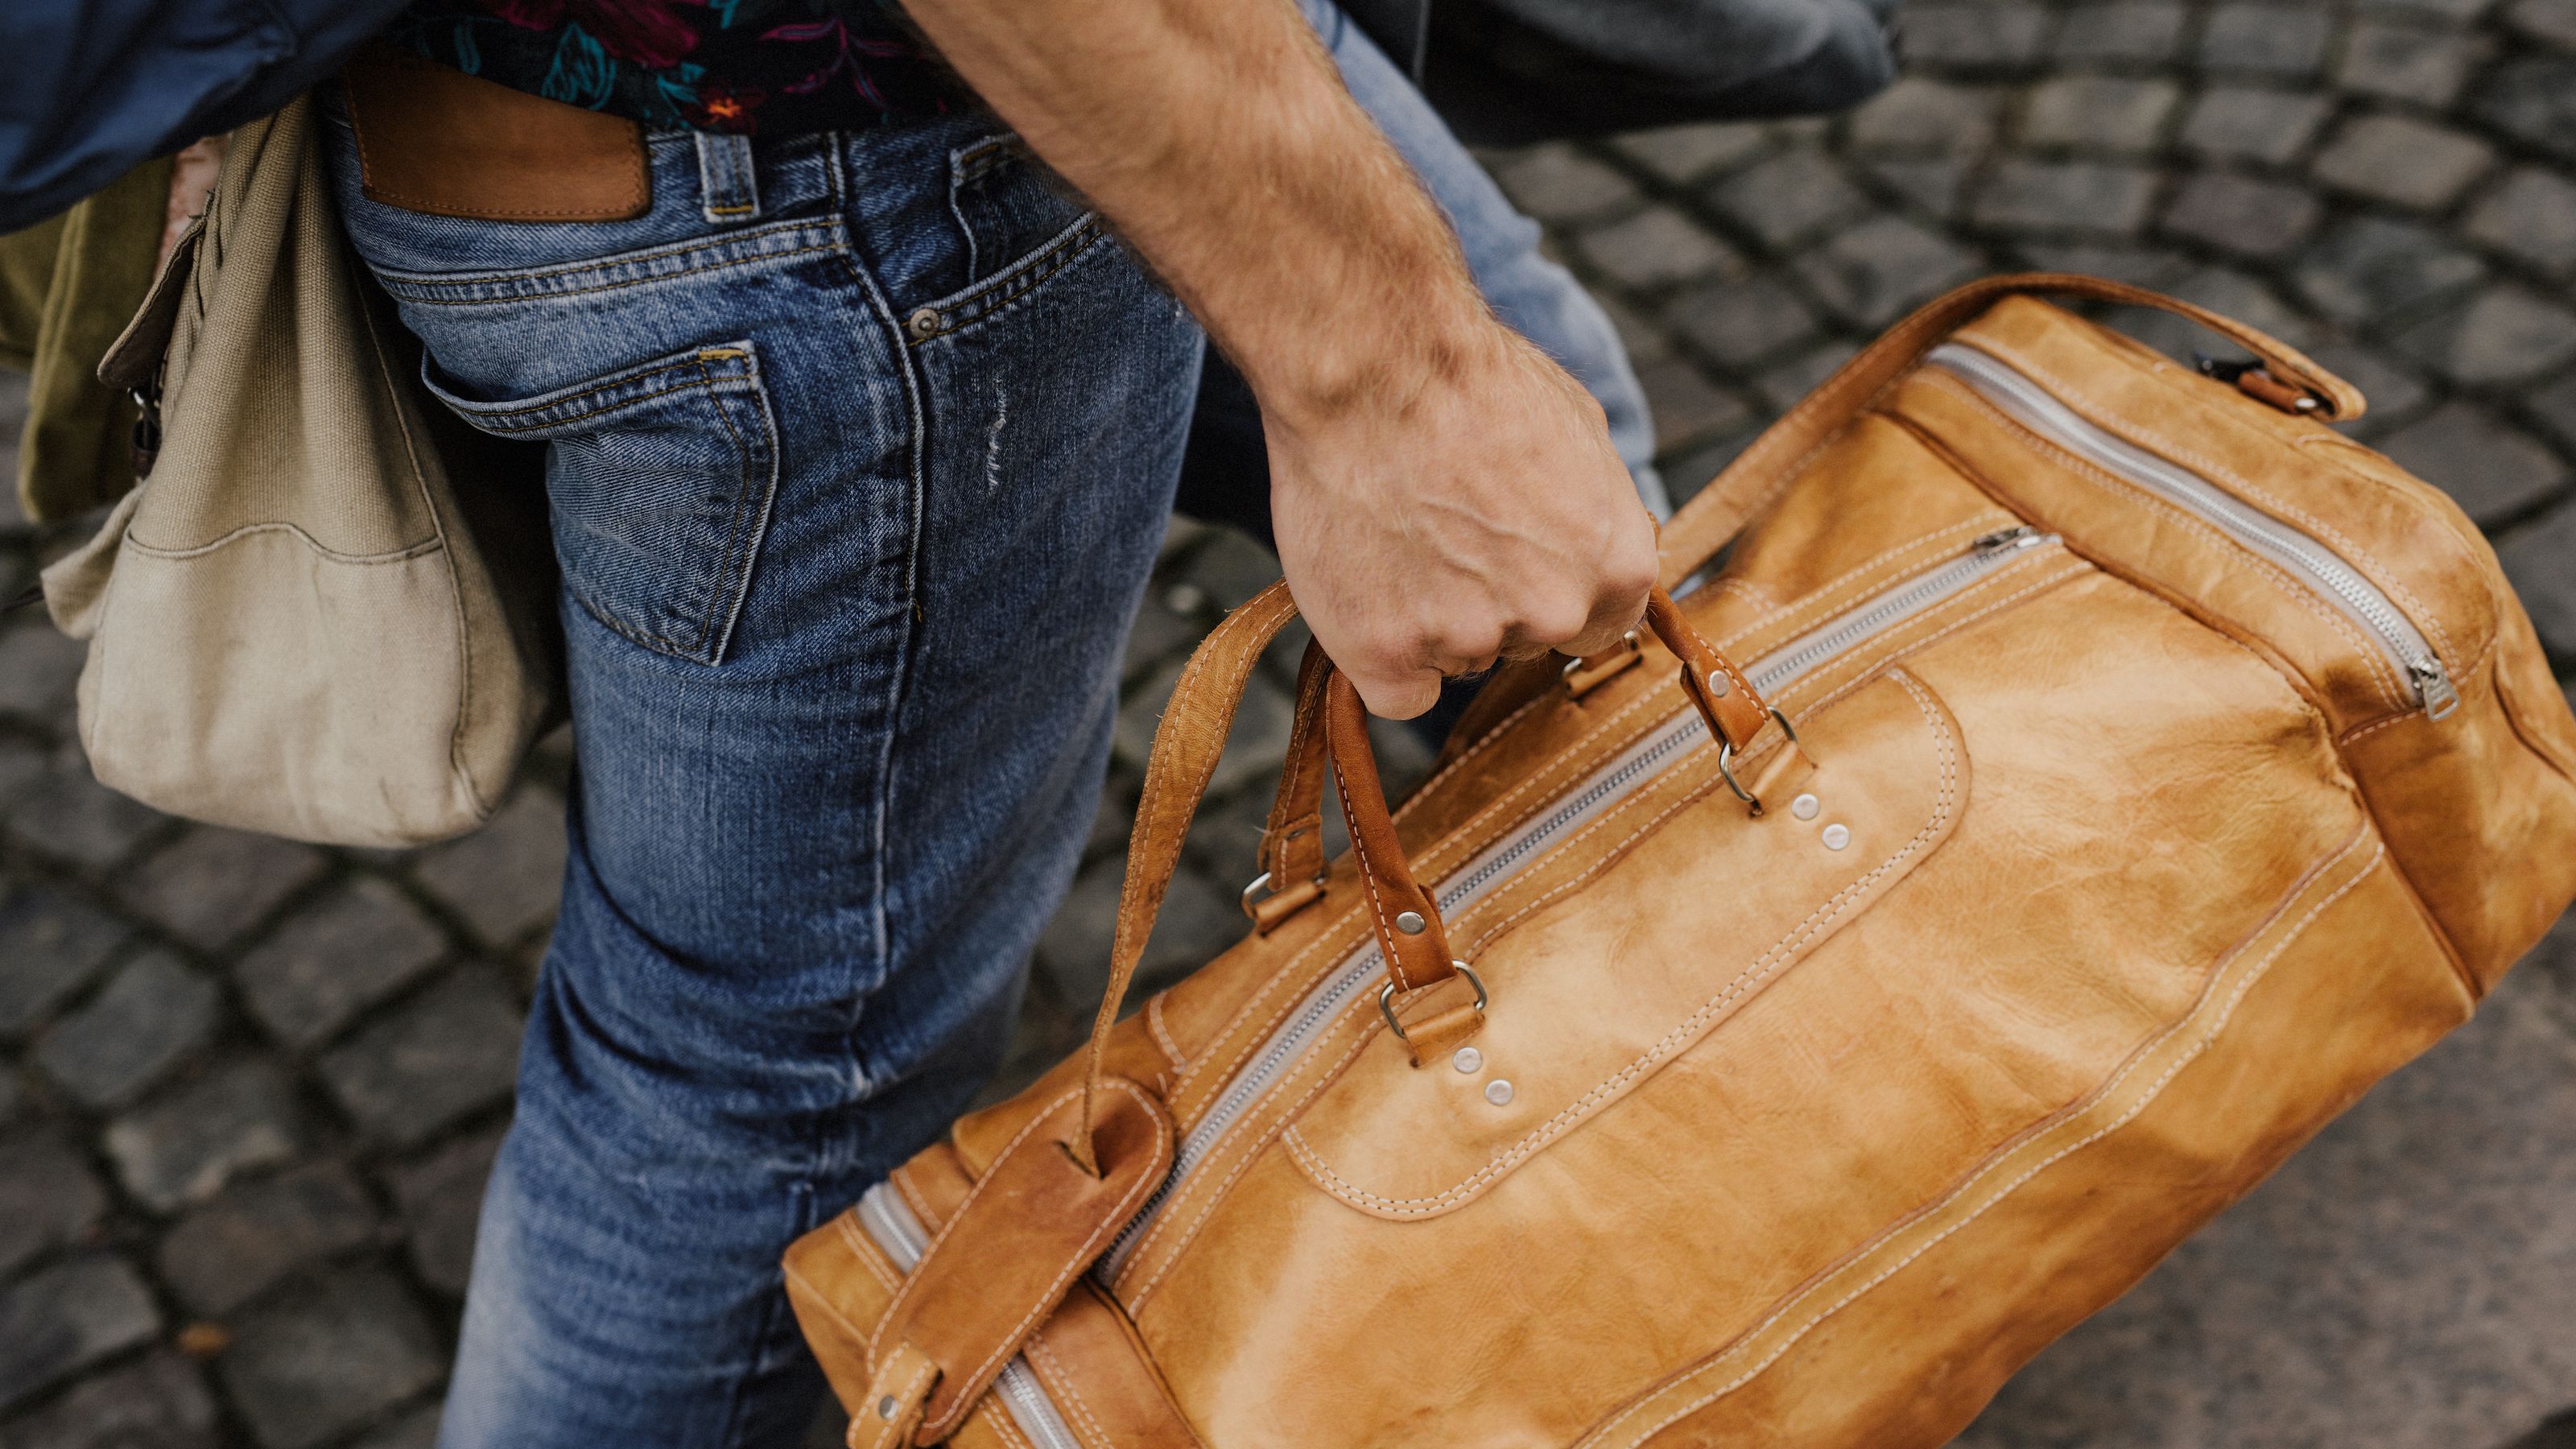 Women's Softsided Travel Bags, Weekenders, Duffles